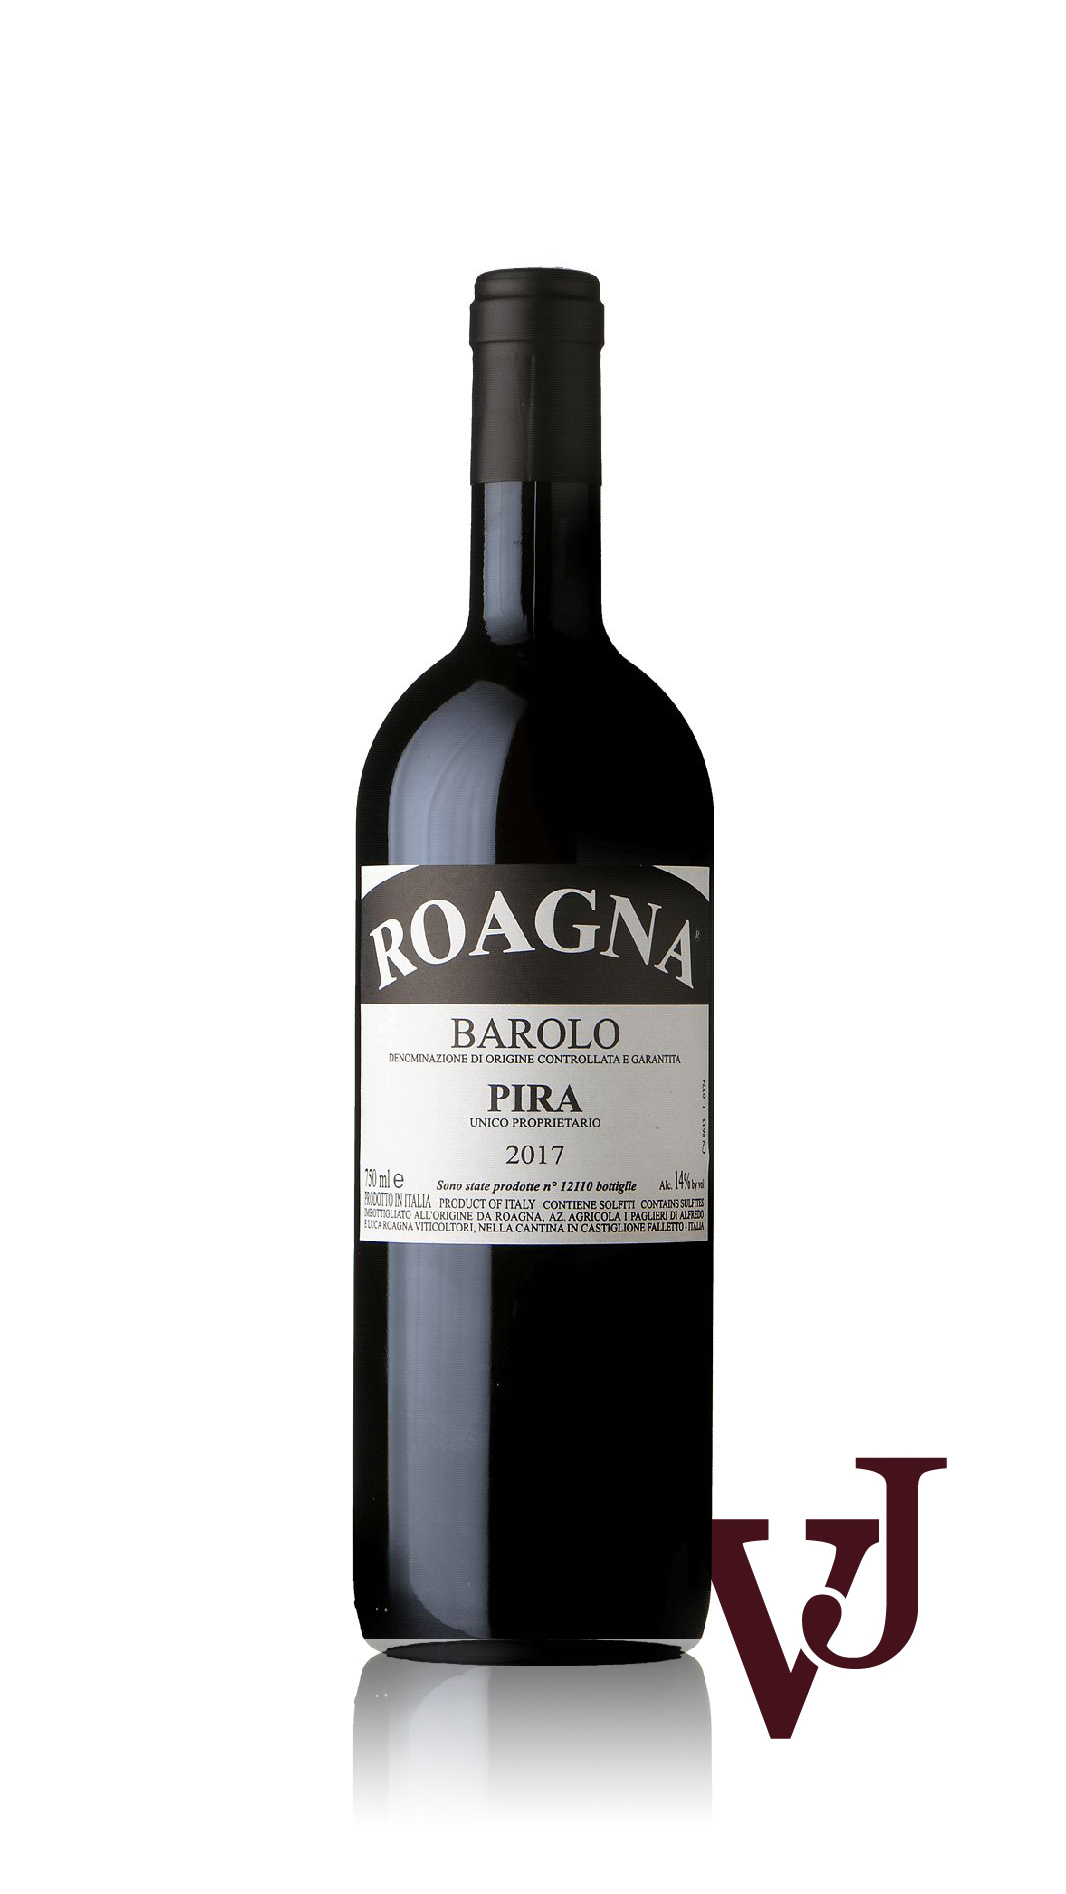 Rött Vin - Barolo Pira Roagna Azienda Agricola 2017 artikel nummer 9054901 från producenten Roagna Azienda Agricola I Paglieri S.S från området Italien